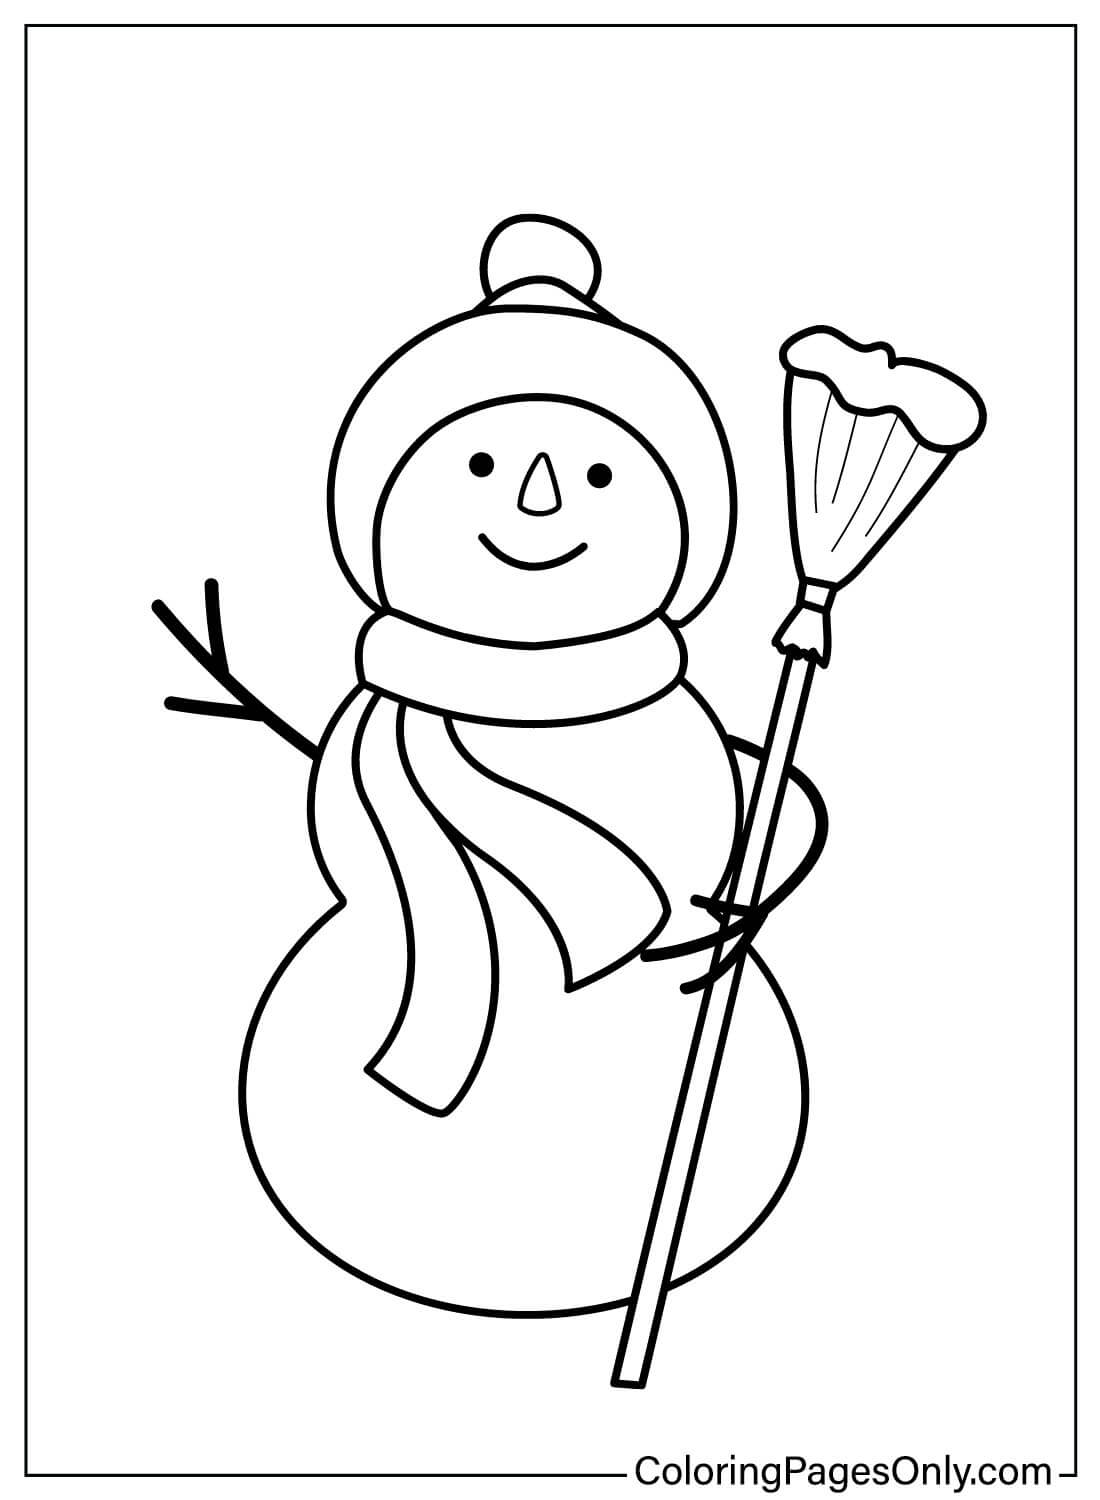 Desenhos para colorir de boneco de neve para impressão